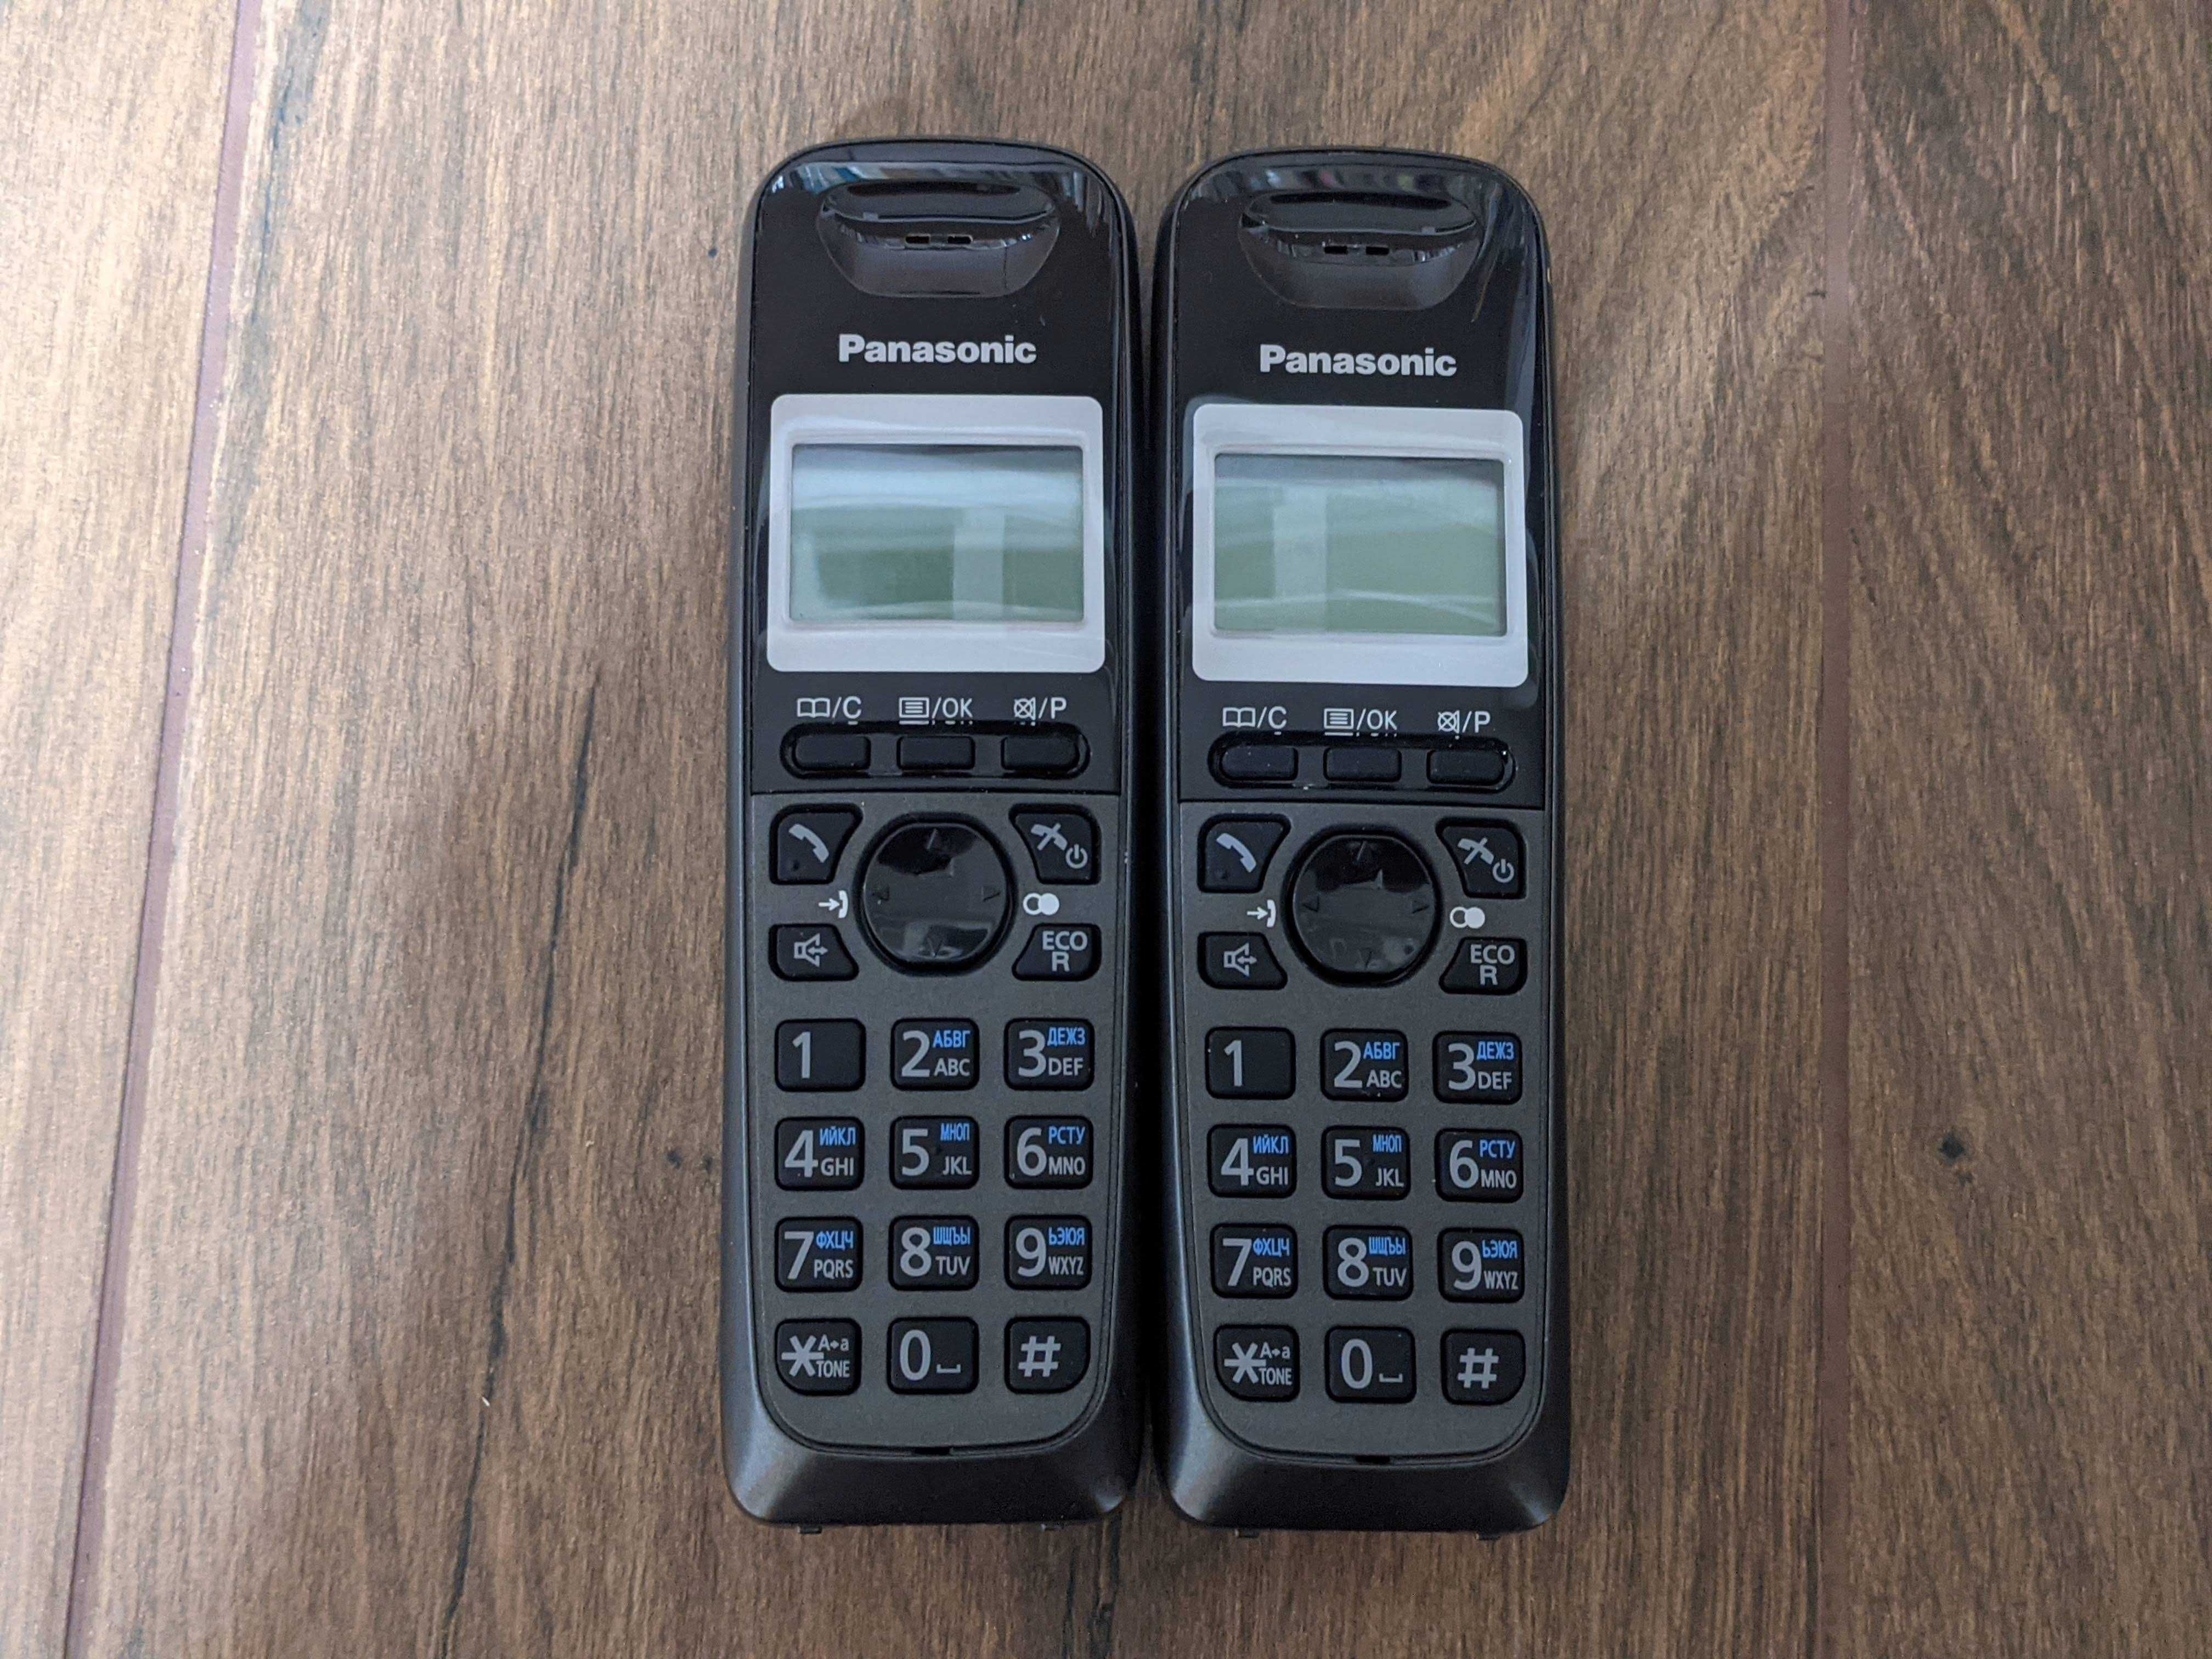 Стаціонарний радіо телефон Panasonic KX-TG2511UA (2шт.)